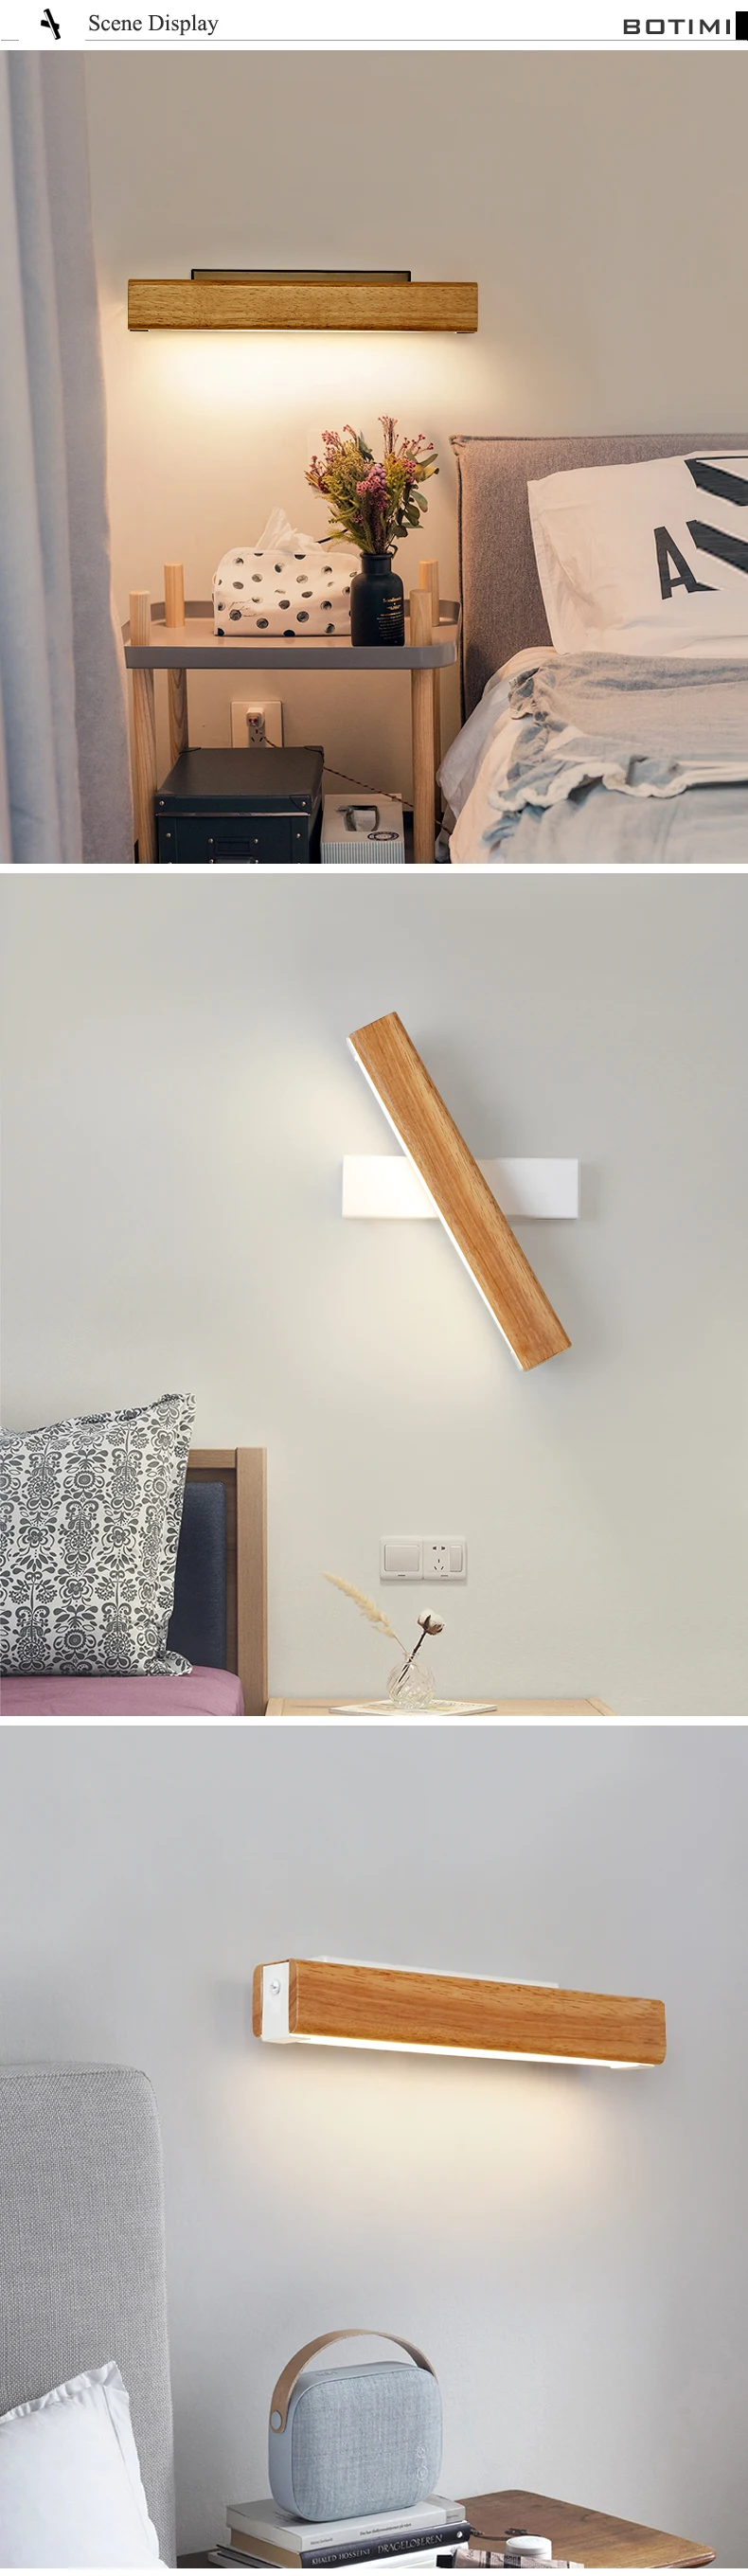 Регулируемый светодиодный настенный светильник BOTIMI для спальни, прикроватный деревянный настенный светильник, Белый настенный светильник, современное освещение для отеля